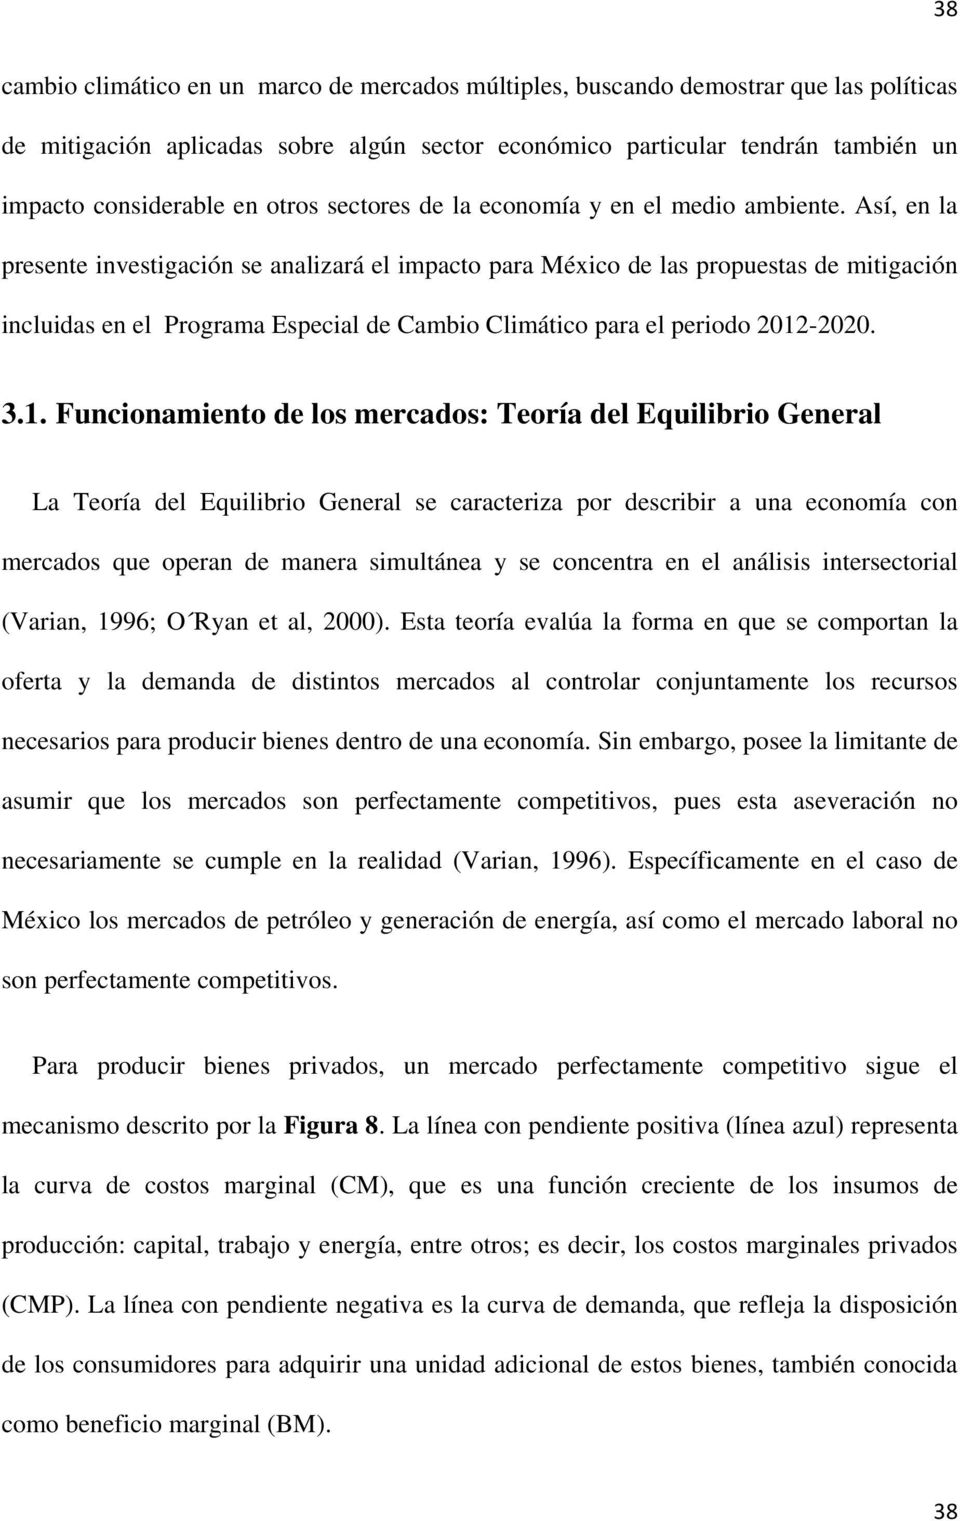 Así, en la presente investigación se analizará el impacto para México de las propuestas de mitigación incluidas en el Programa Especial de Cambio Climático para el periodo 2012